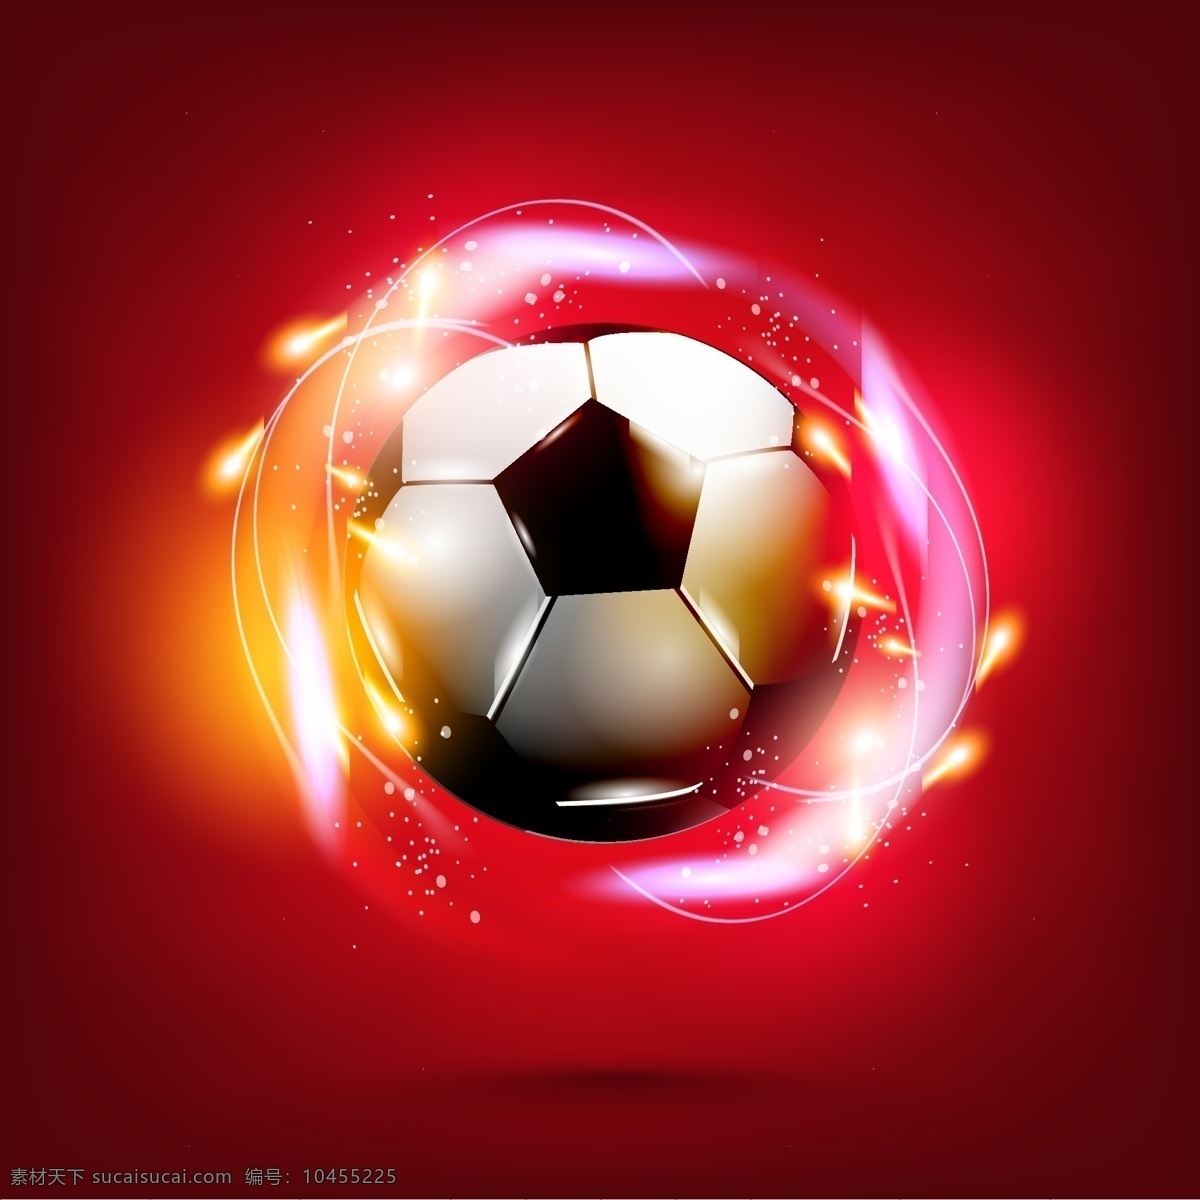 绚丽 火焰 足球 矢量 背景 红色背景开心 火焰足球 激情 狂欢 炫丽足球